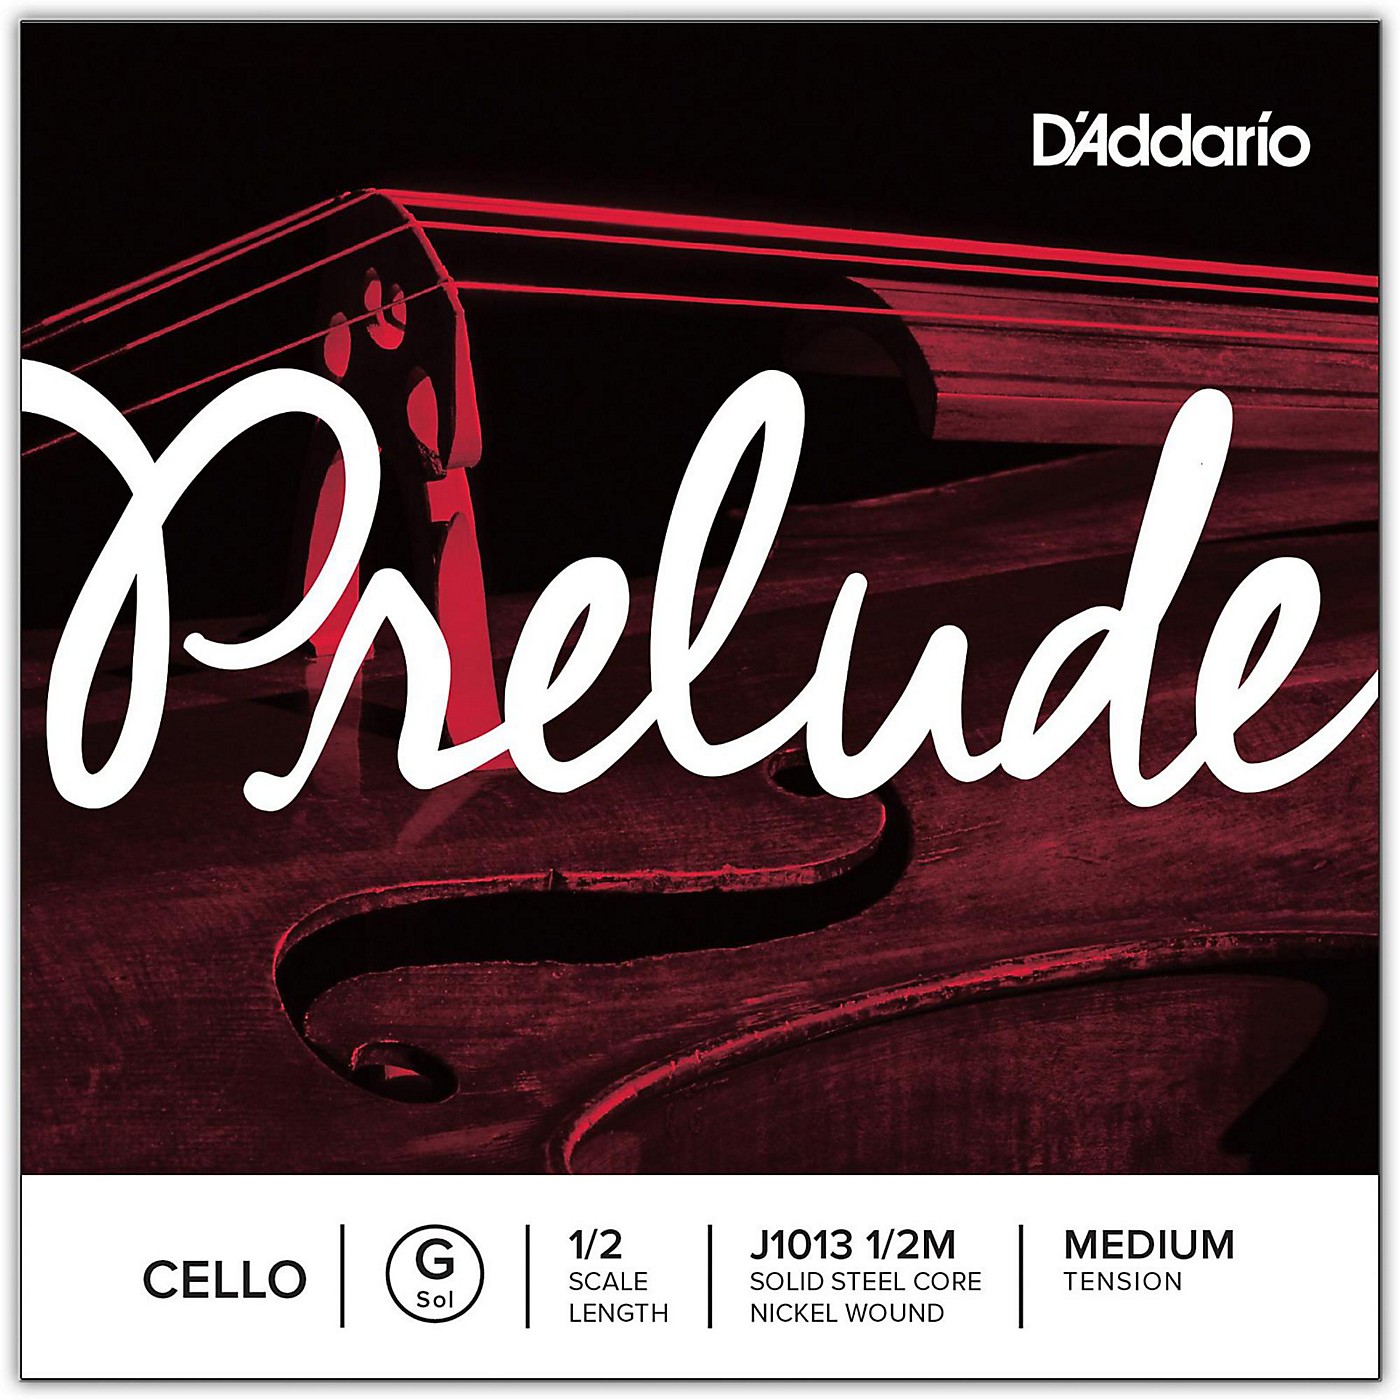 D'Addario Prelude Series Cello G String thumbnail